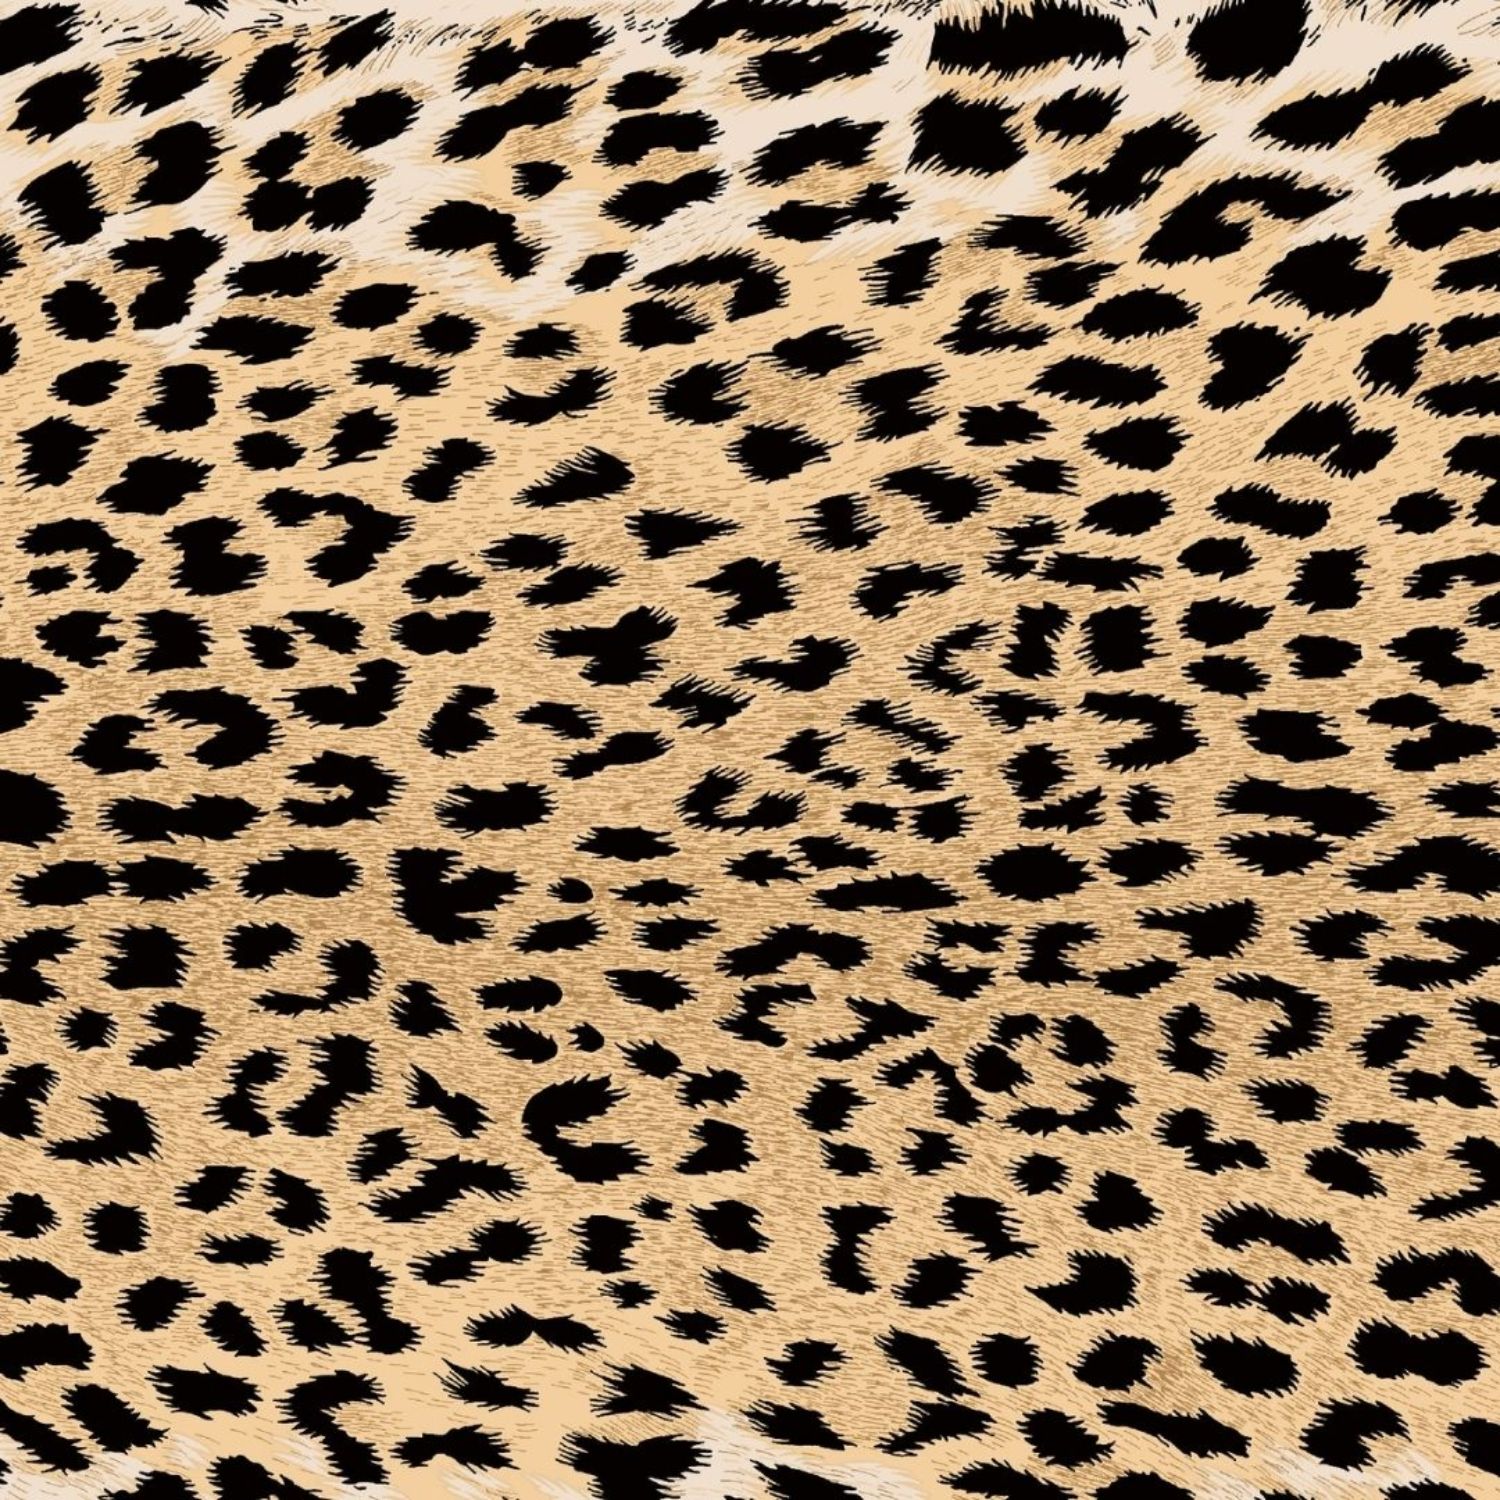 maculato-copripiumino-puro-cotone-animalier-quadrifoglio-leopardato-beige-marroncino-bianco-nero-pattern